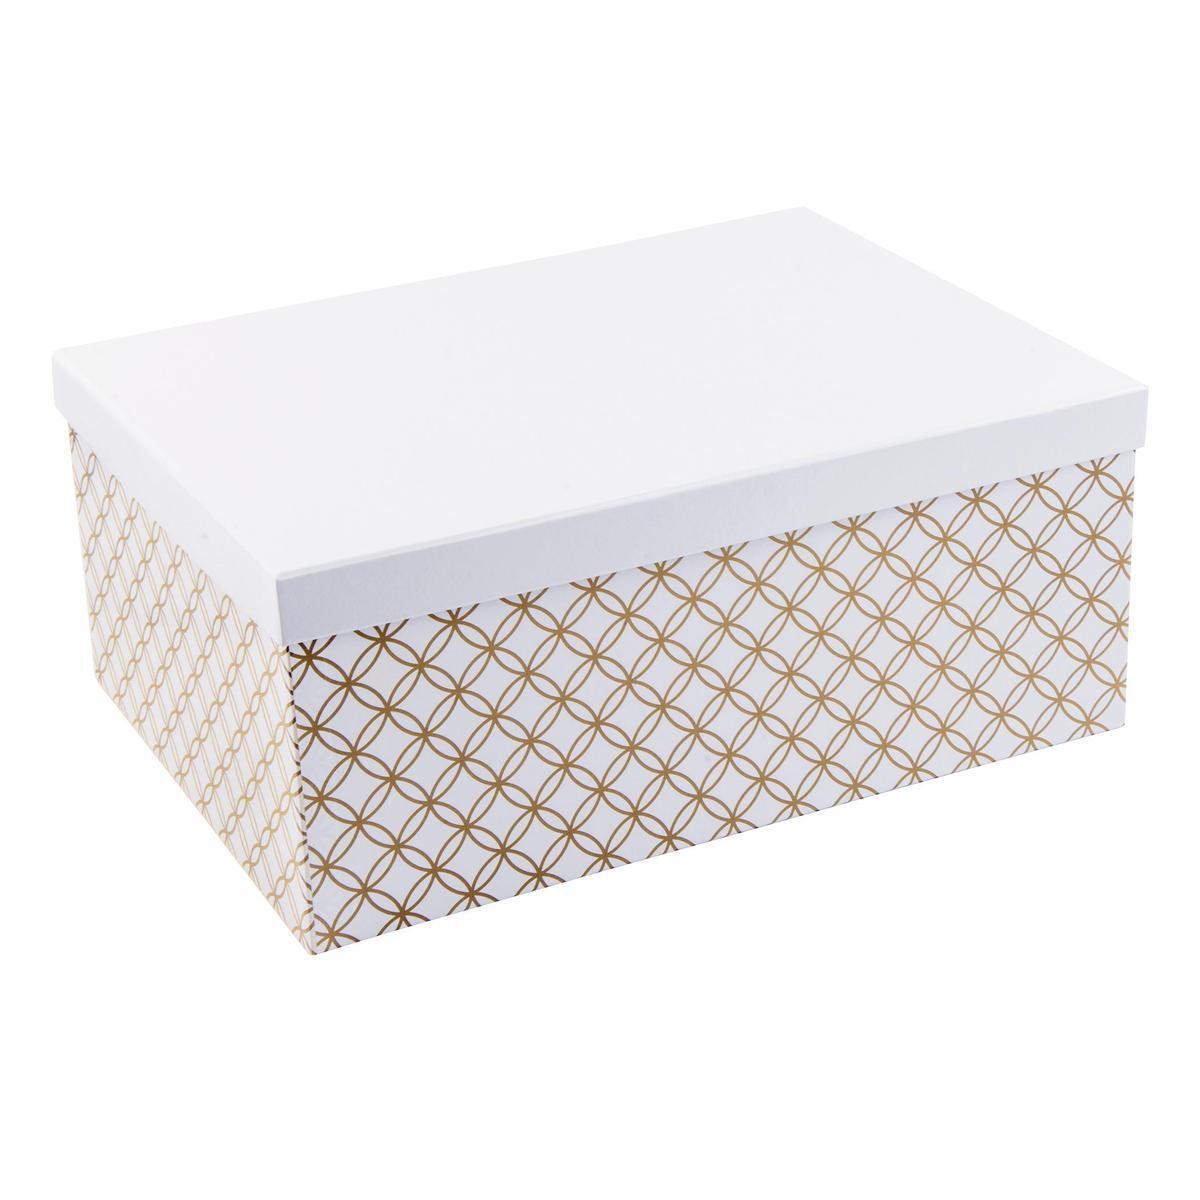 Boîte scandinave - Carton - 39,5 x 19,5 x H 16,5 cm - Blanc et doré